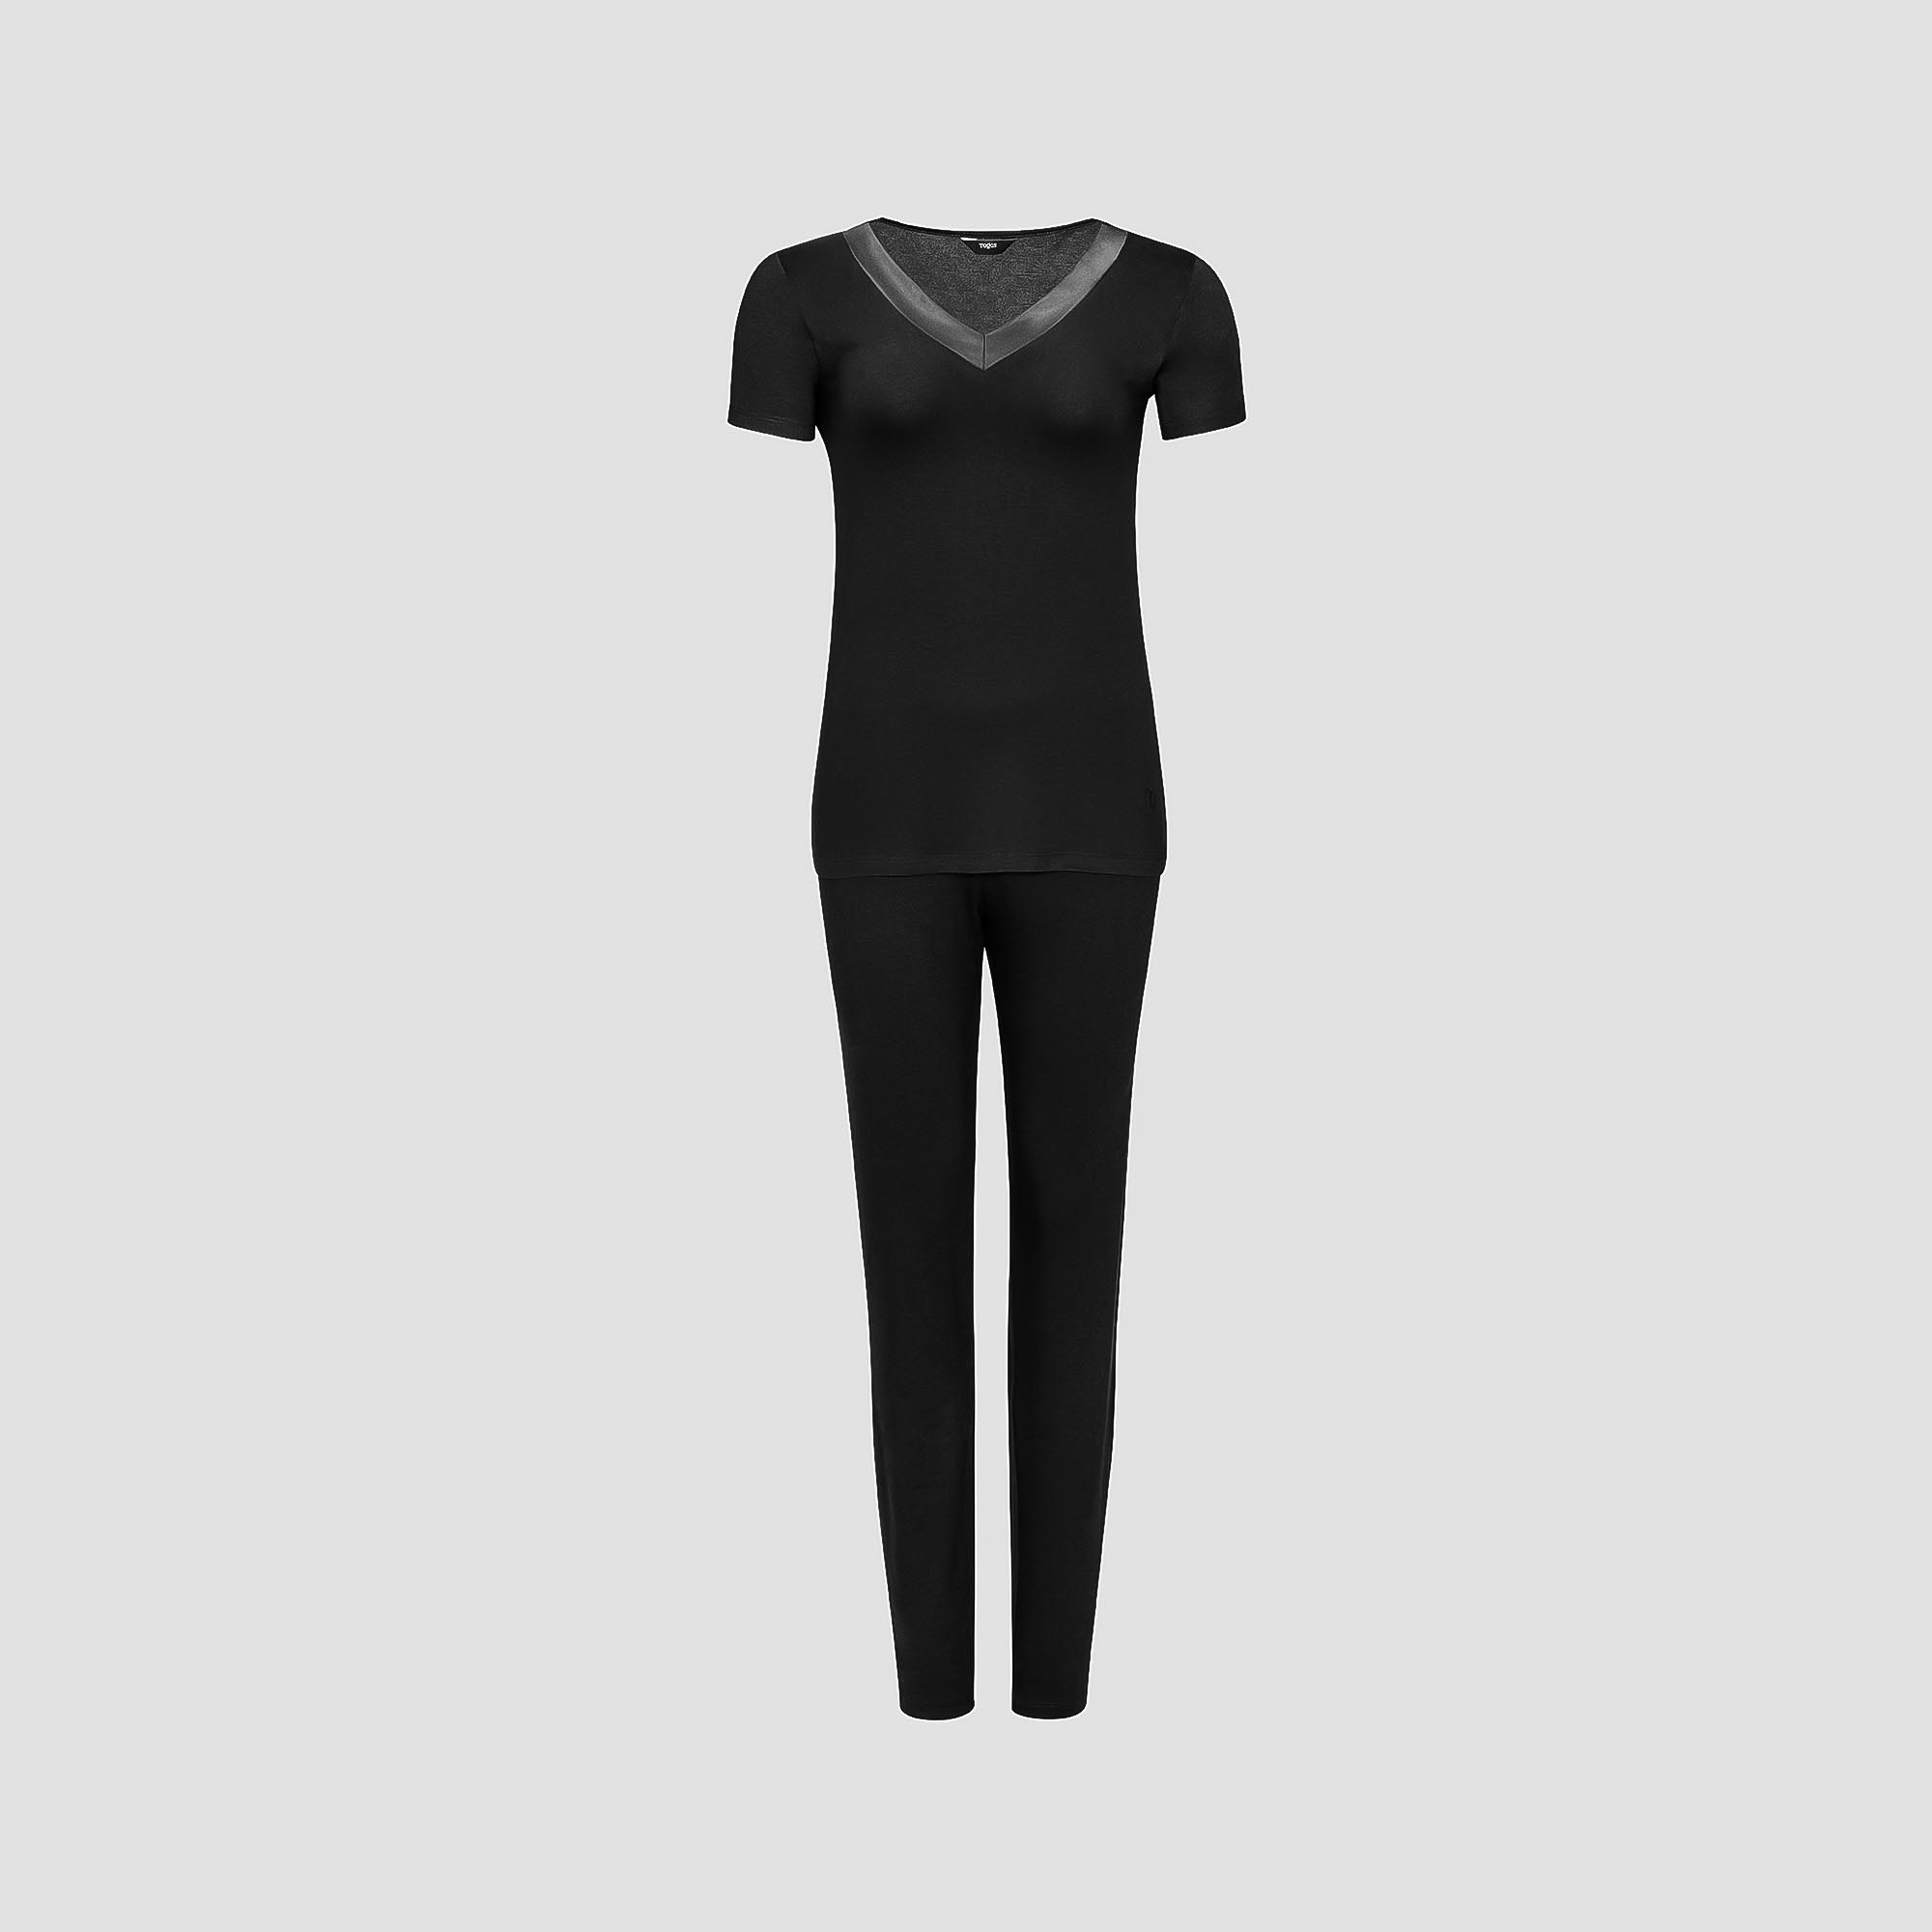 Пижама Togas Ингелла черная женская M(46) 2 предмета